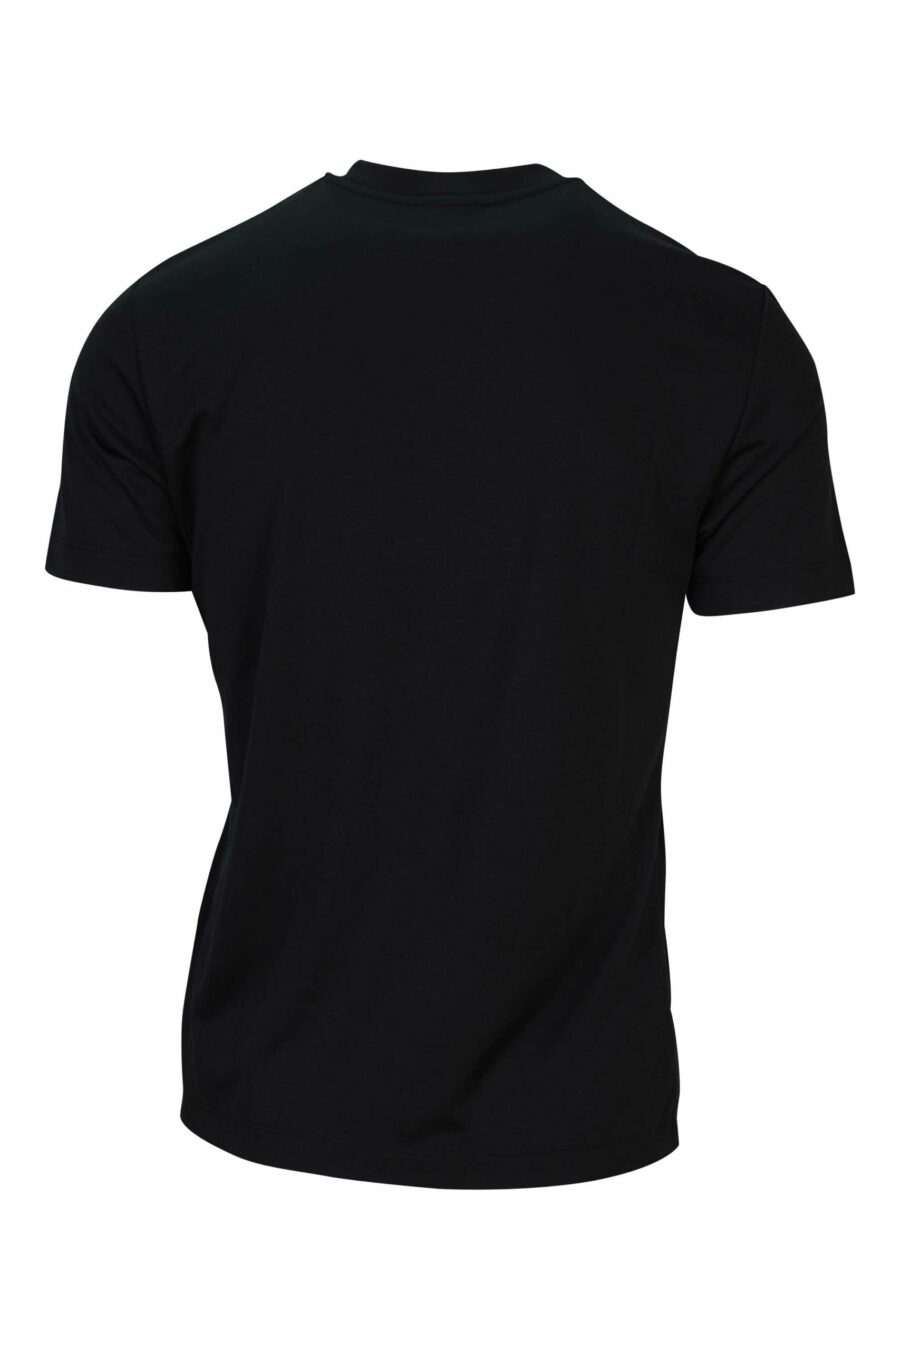 T-shirt oversize noir avec mini-logo "lux identity" blanc sur fond noir - 8058947508570 2 scaled